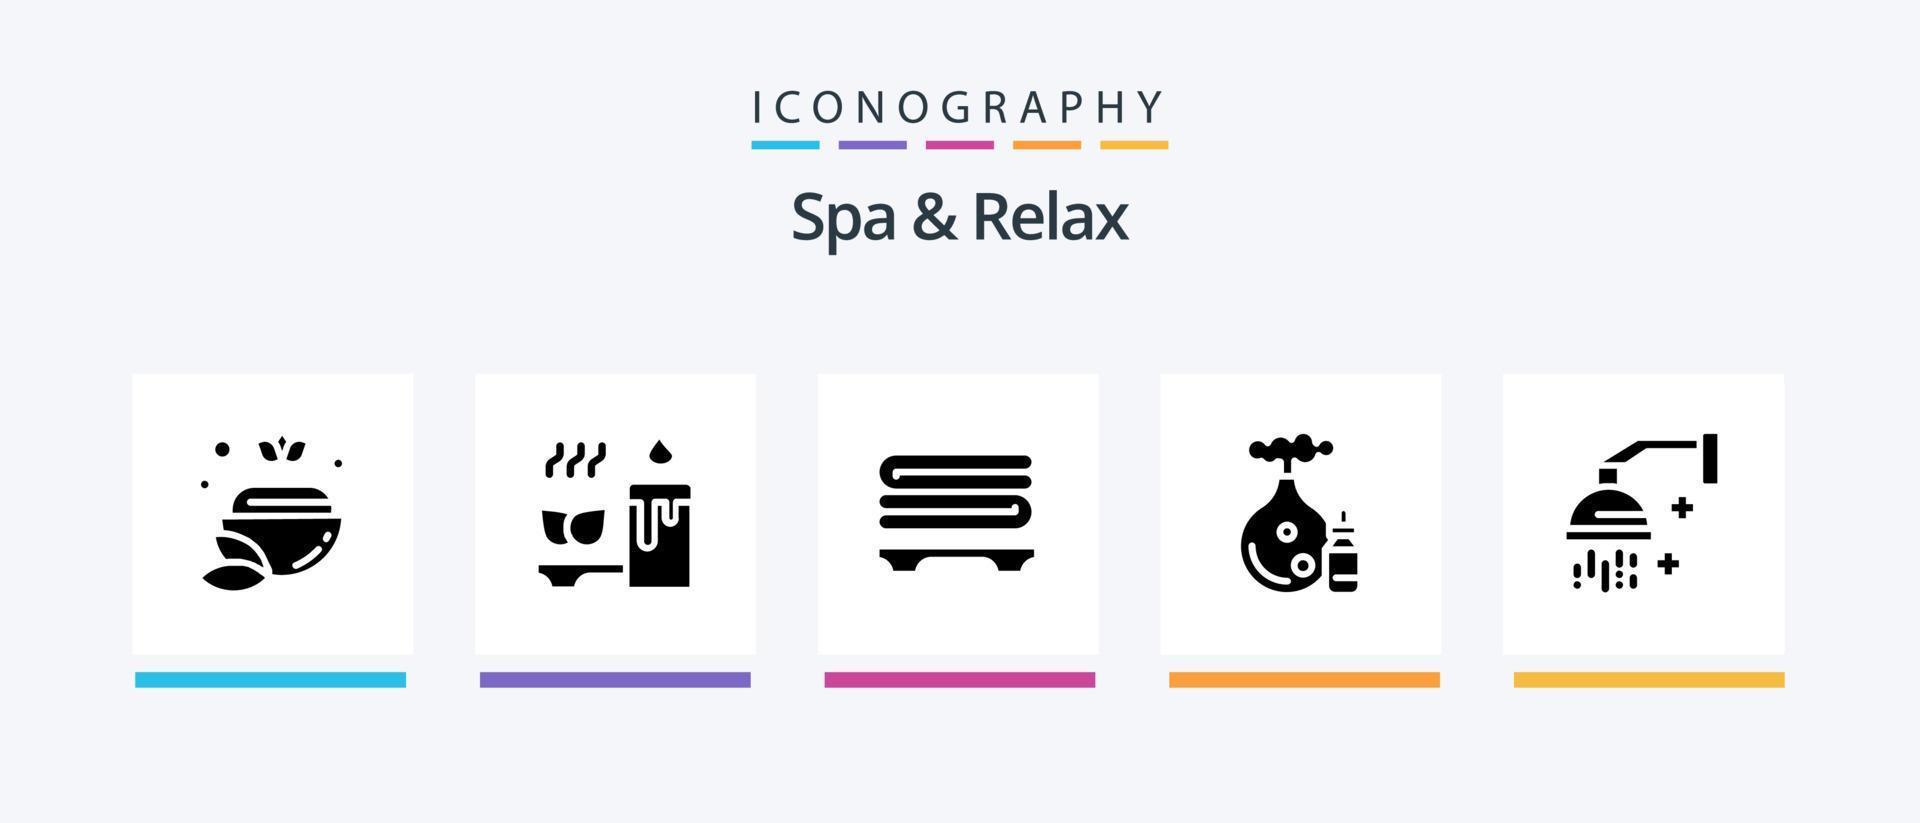 paquete de iconos spa y relax glyph 5 que incluye botella. aroma relajación toallas diseño de iconos creativos vector